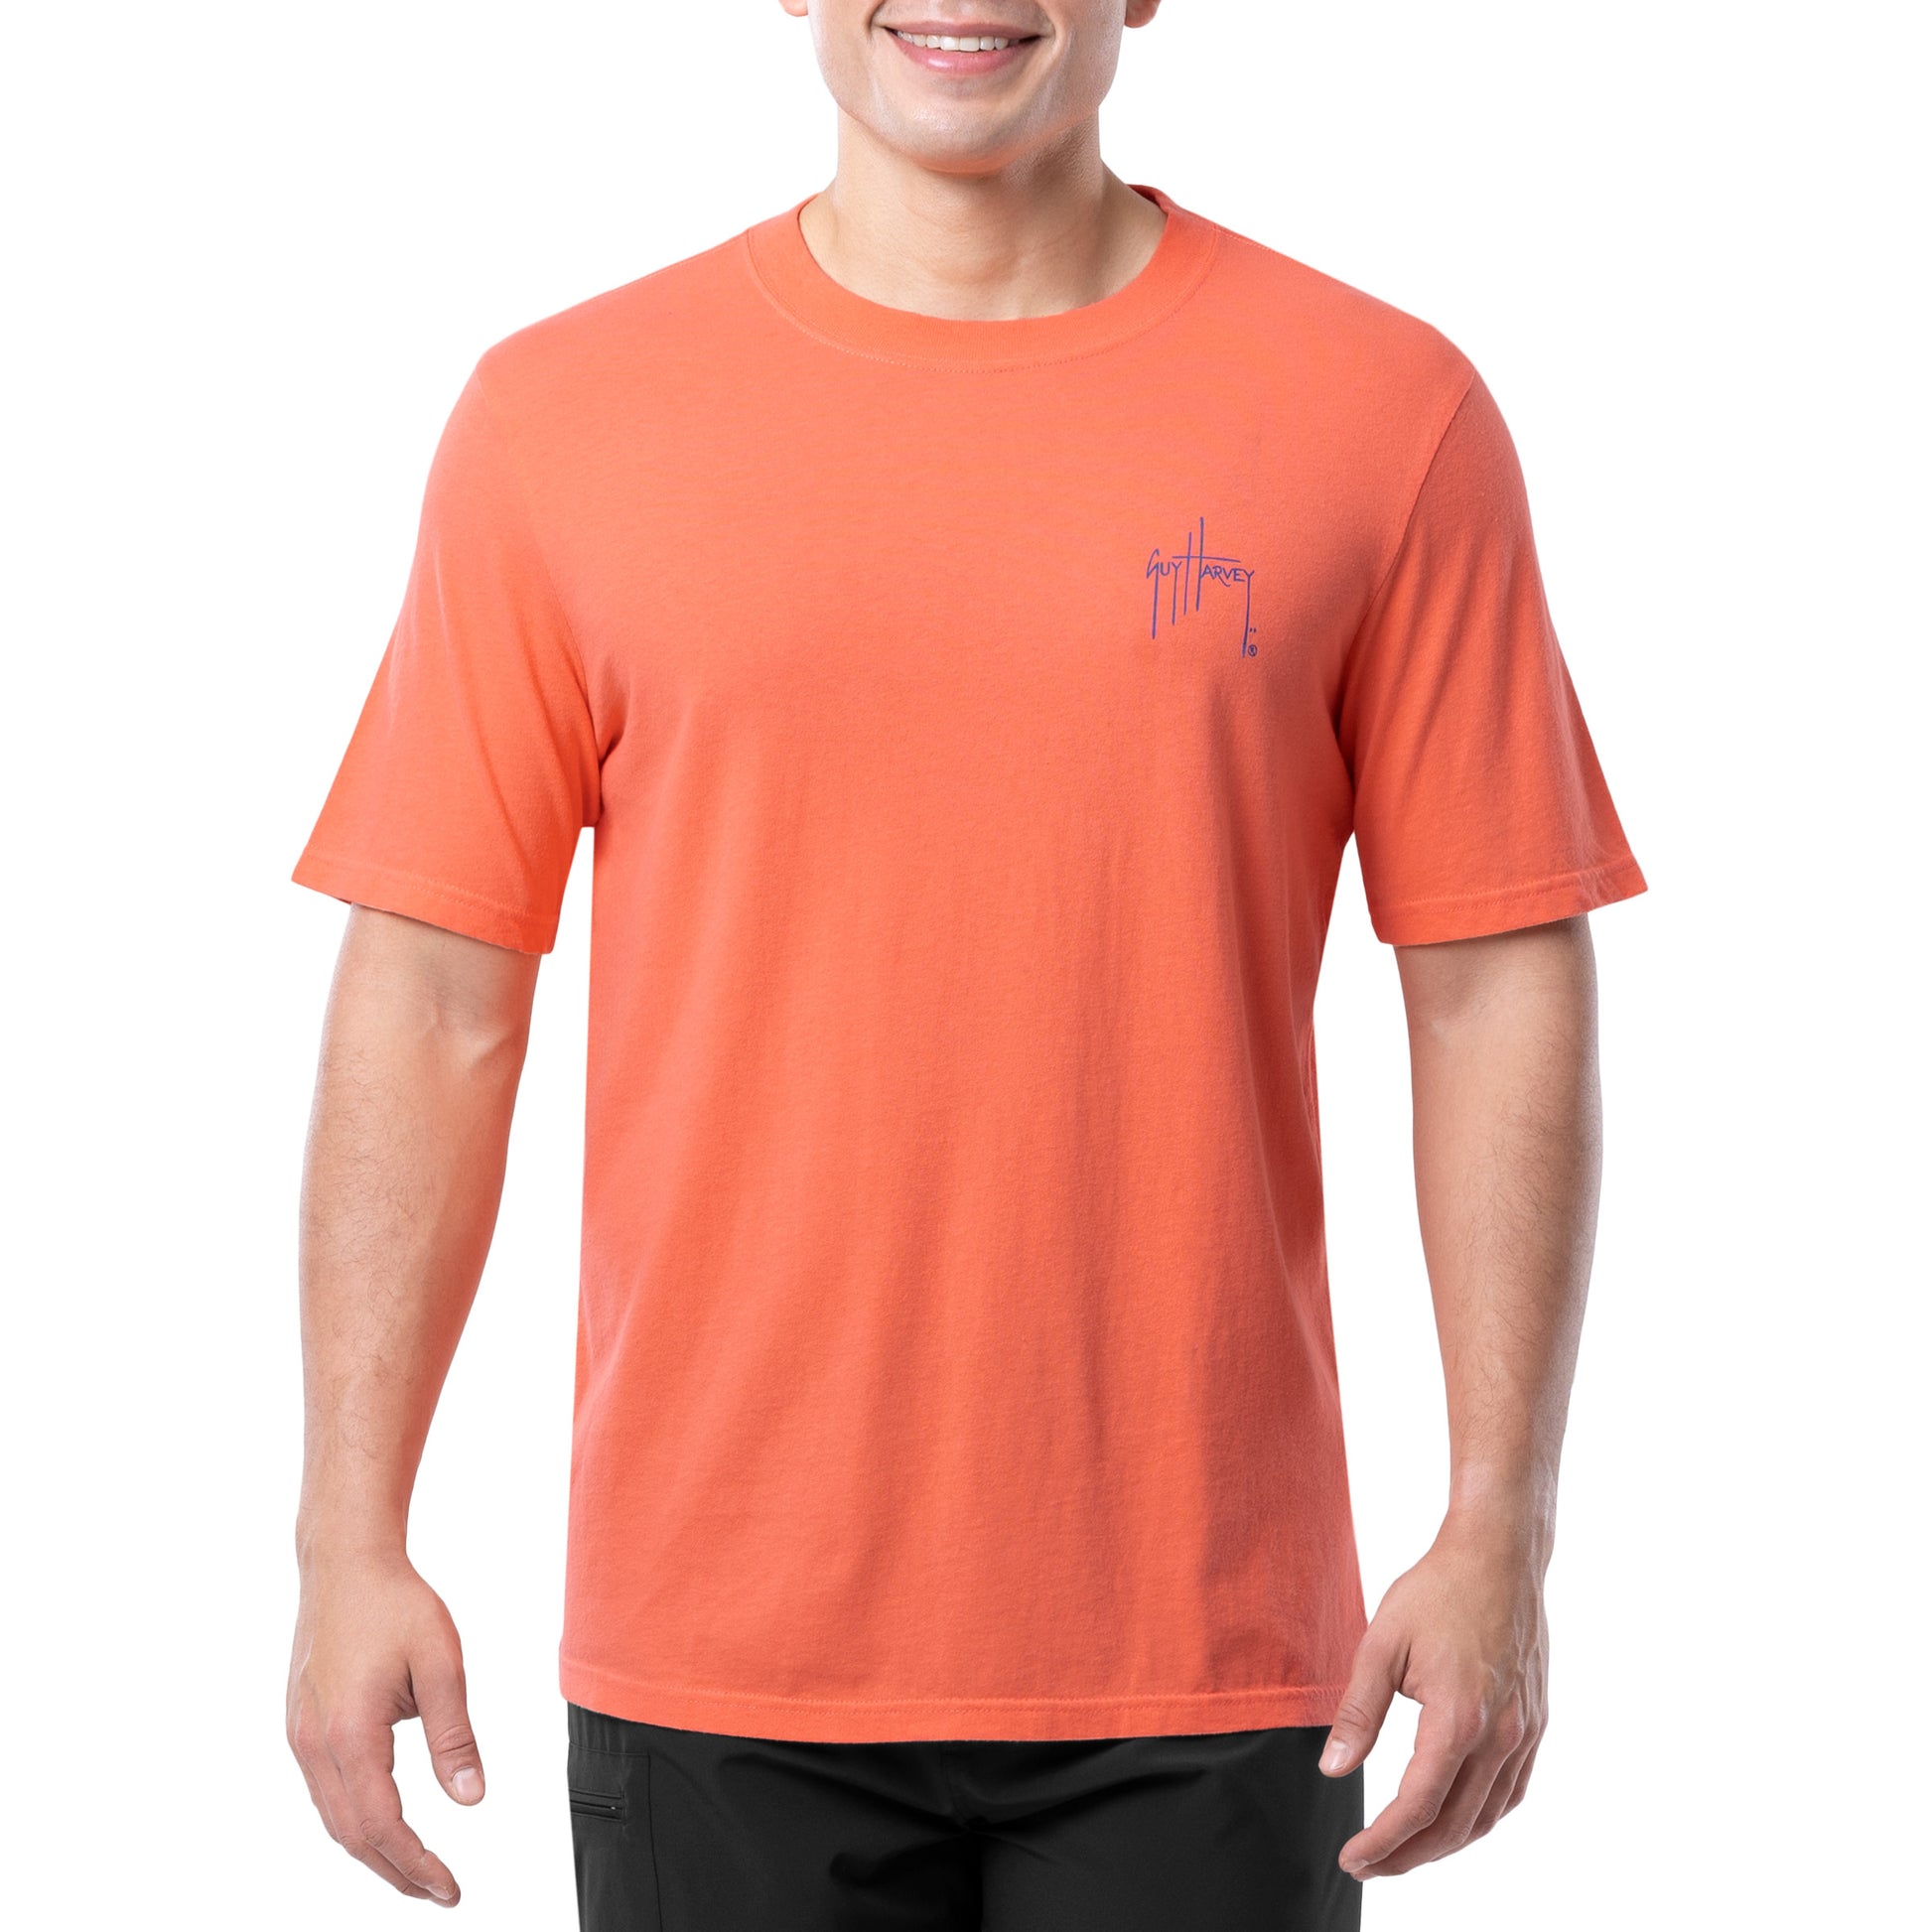 Men's Sport Fishing Short Sleeve T-Shirt – Guy Harvey